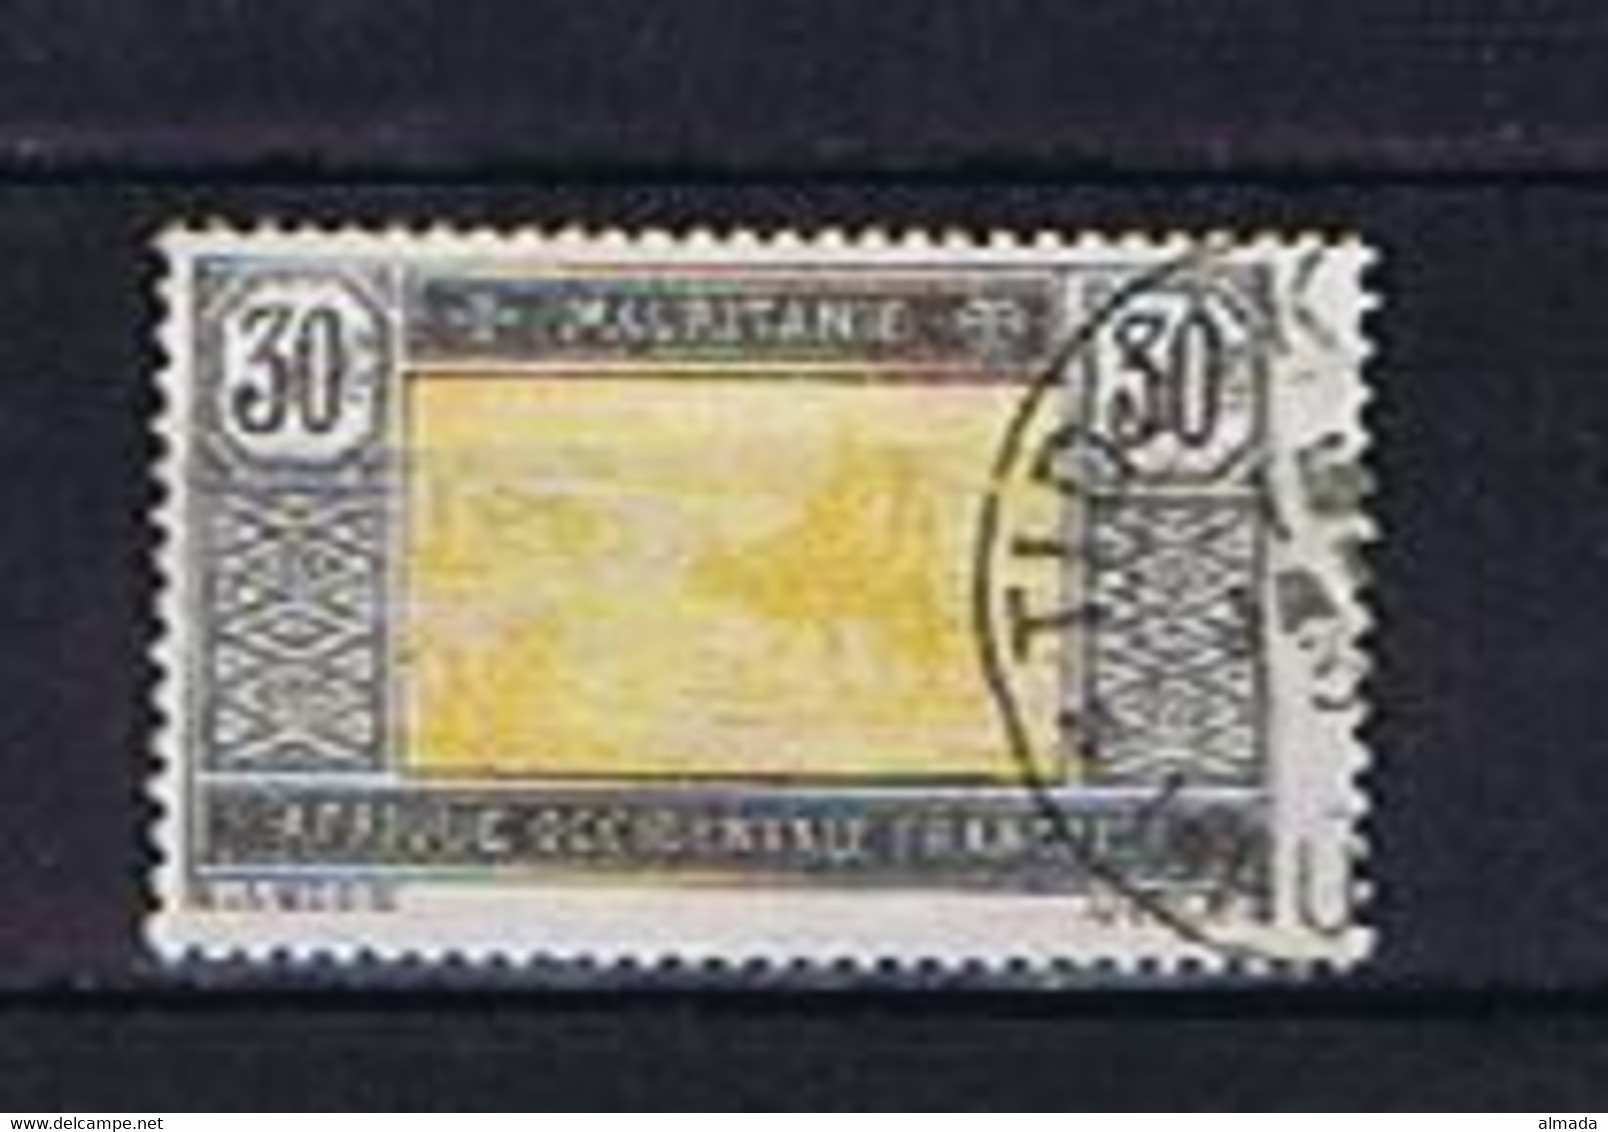 Mauritanie, Mauretanien 1926: Michel #51 Used, Gestempelt - Used Stamps